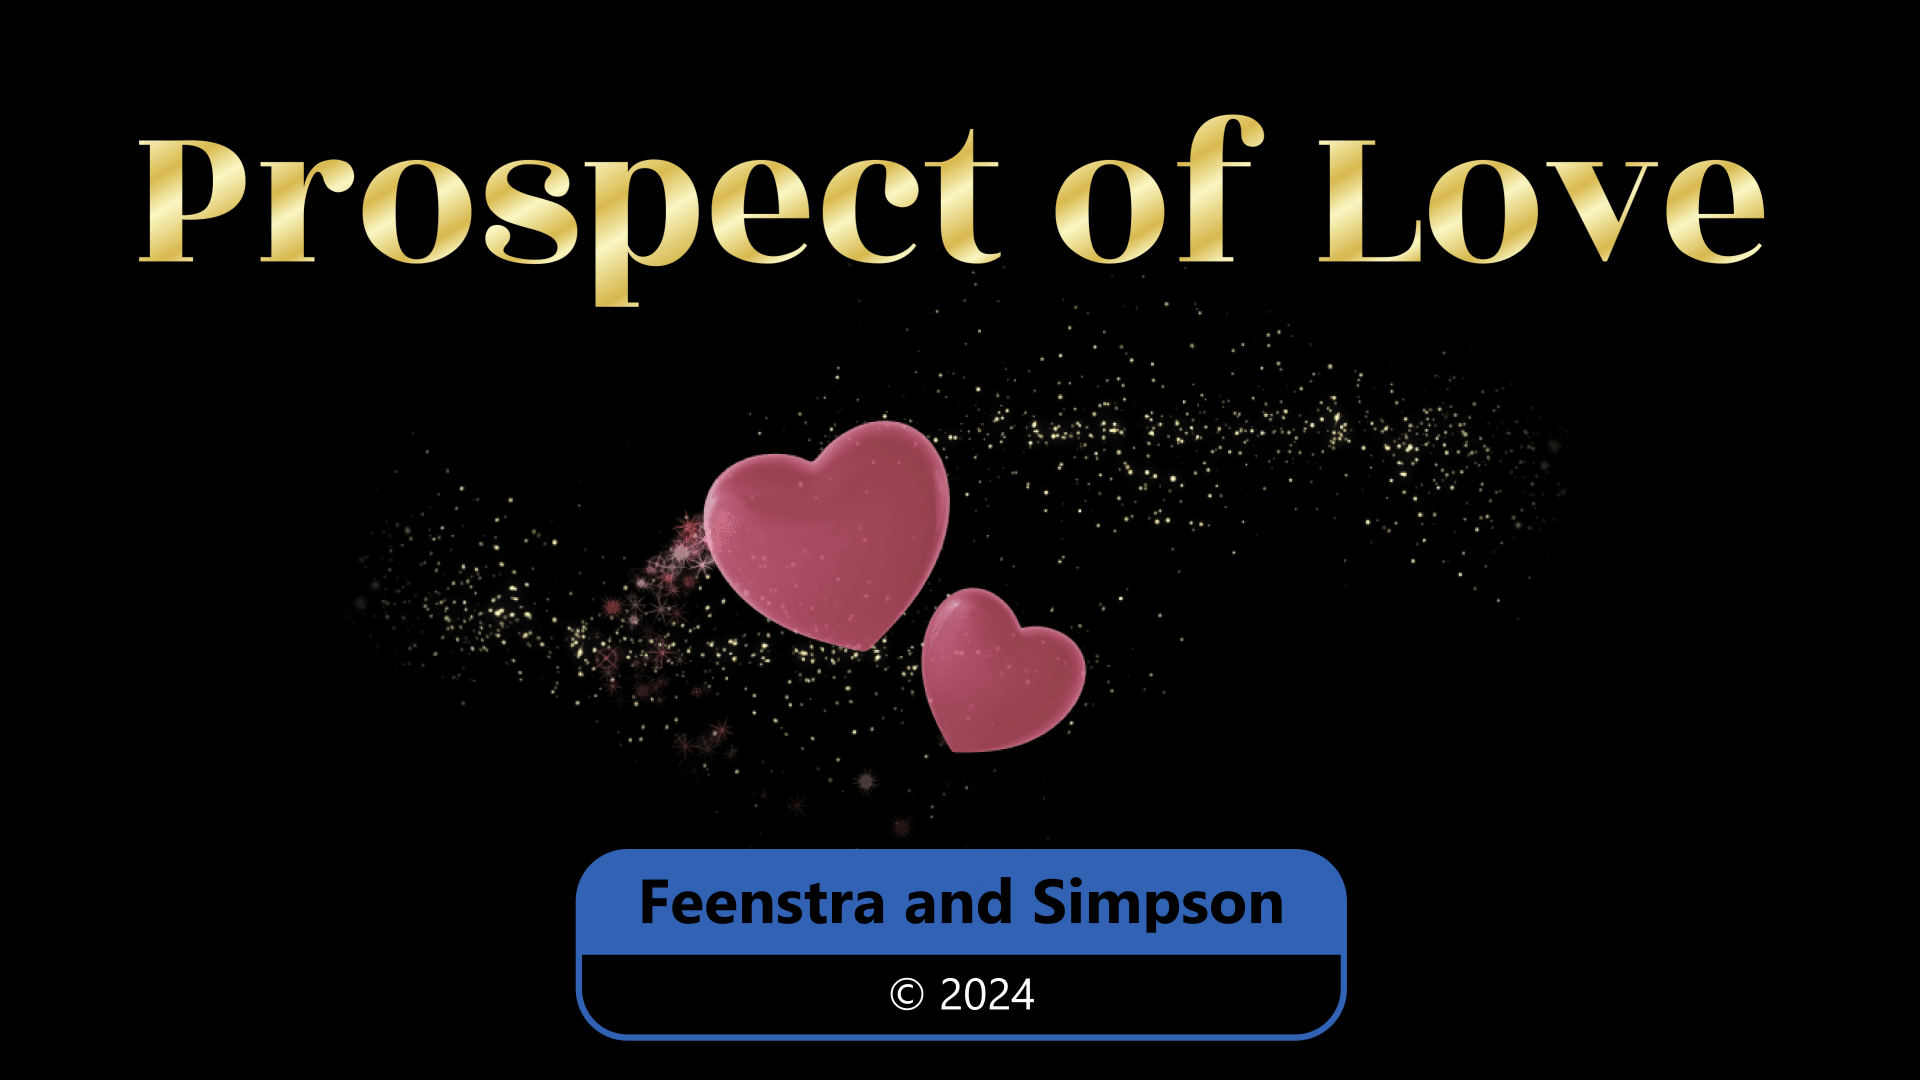 Feenstra & Simpson - Prospect Of Love